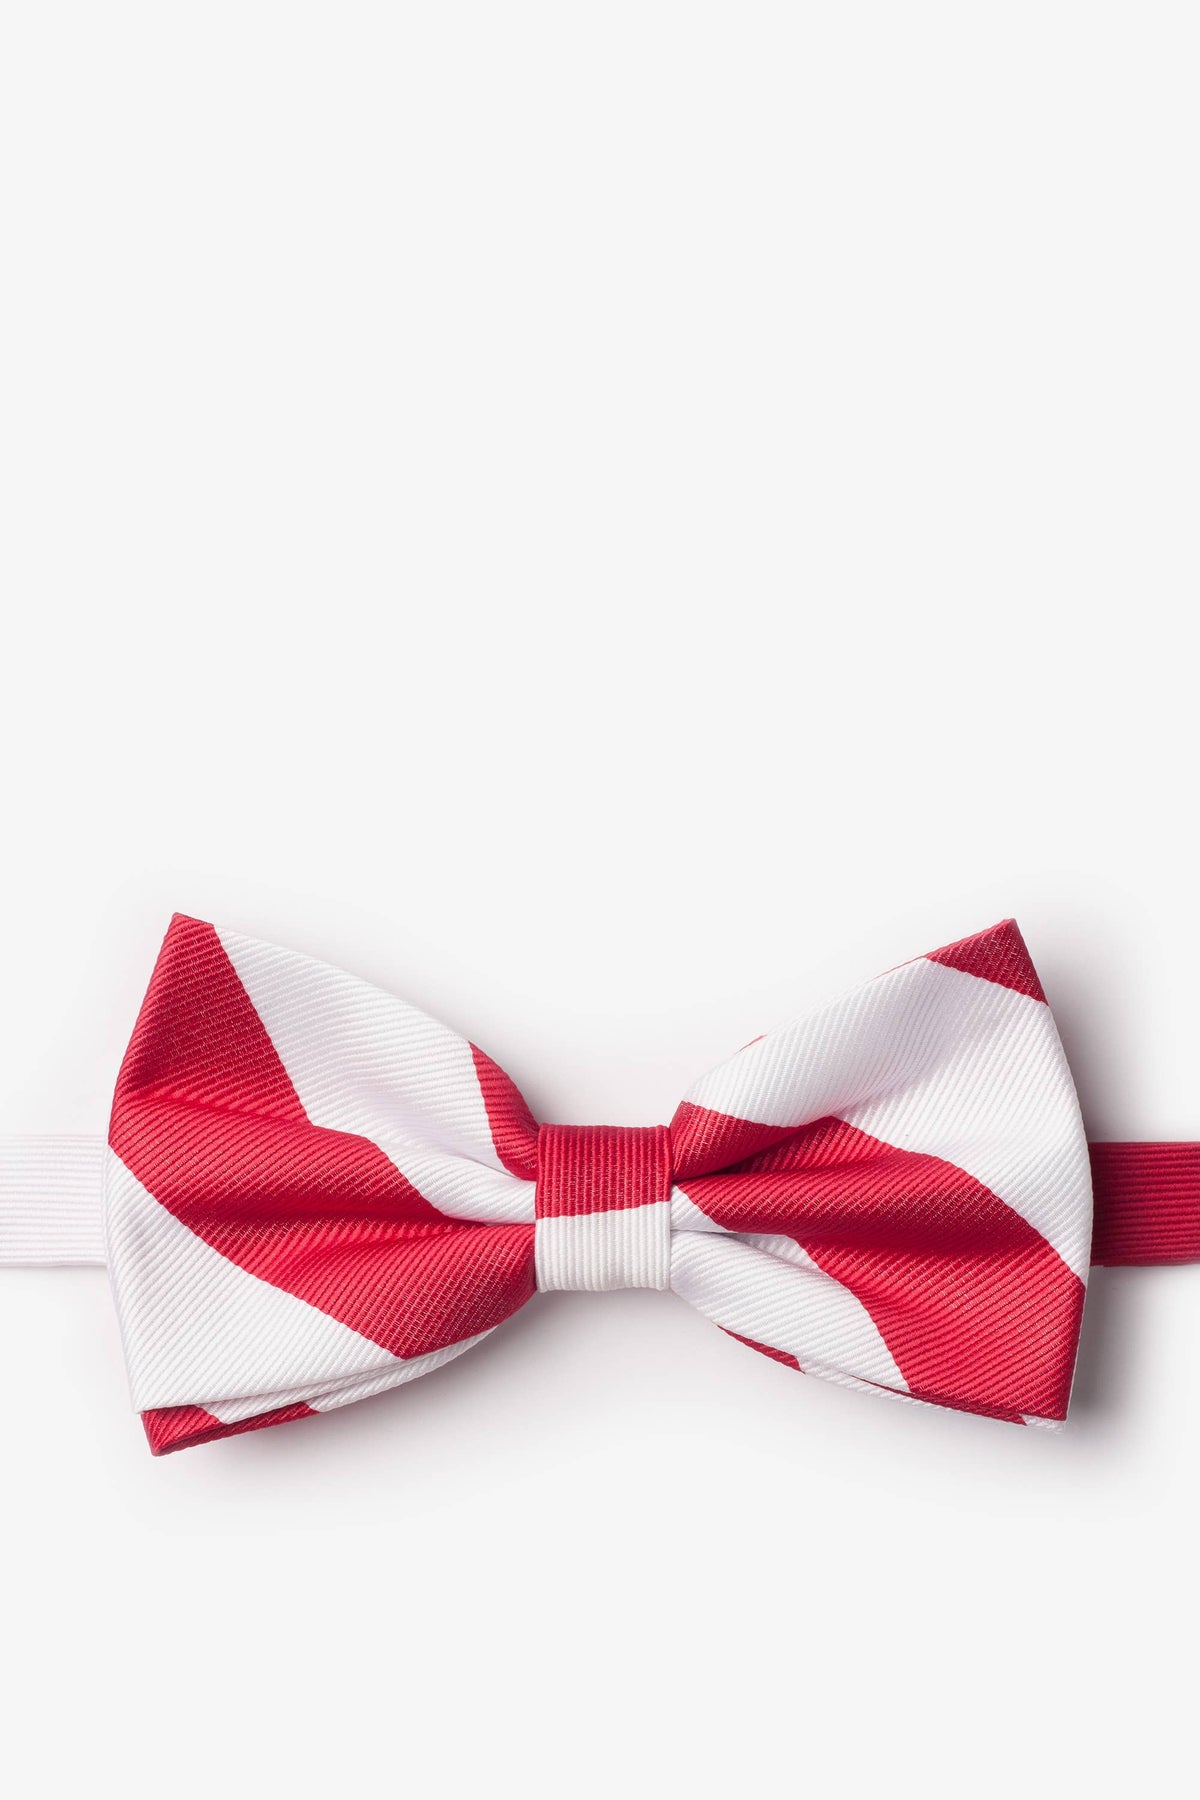 Red and White College Collegiate Stripe - School Colors: Self-Tie Bowtie